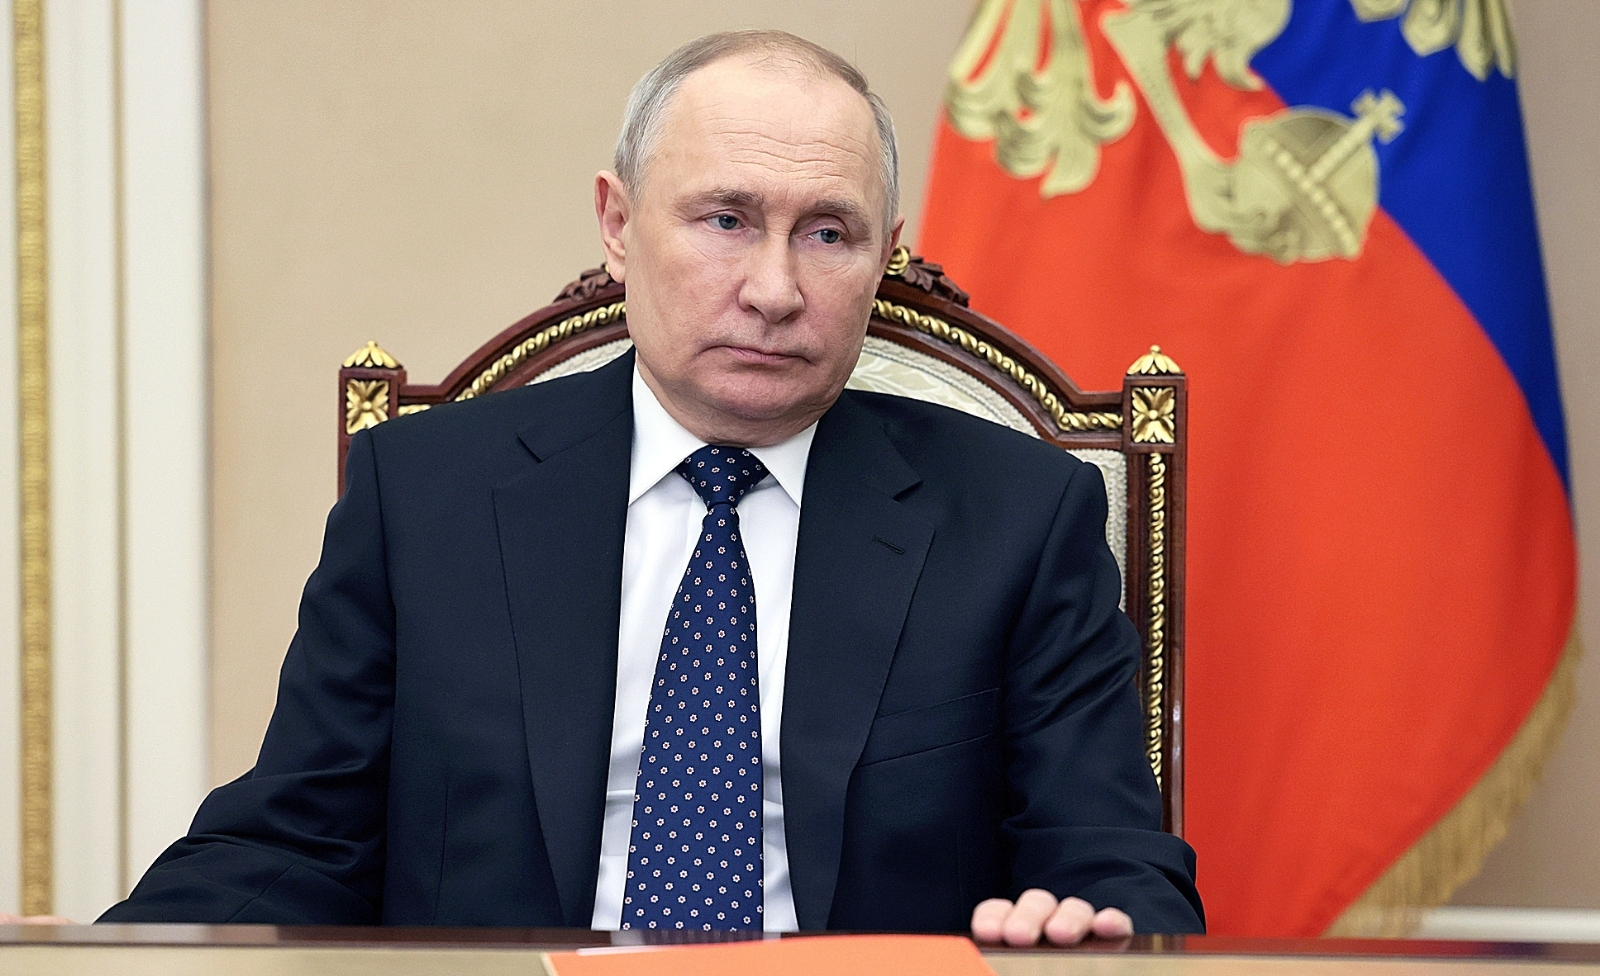 Putin anunció un acuerdo con Bielorrusia para el despliegue de armas nucleares tácticas en territorio de ese país, en la frontera con Ucrania